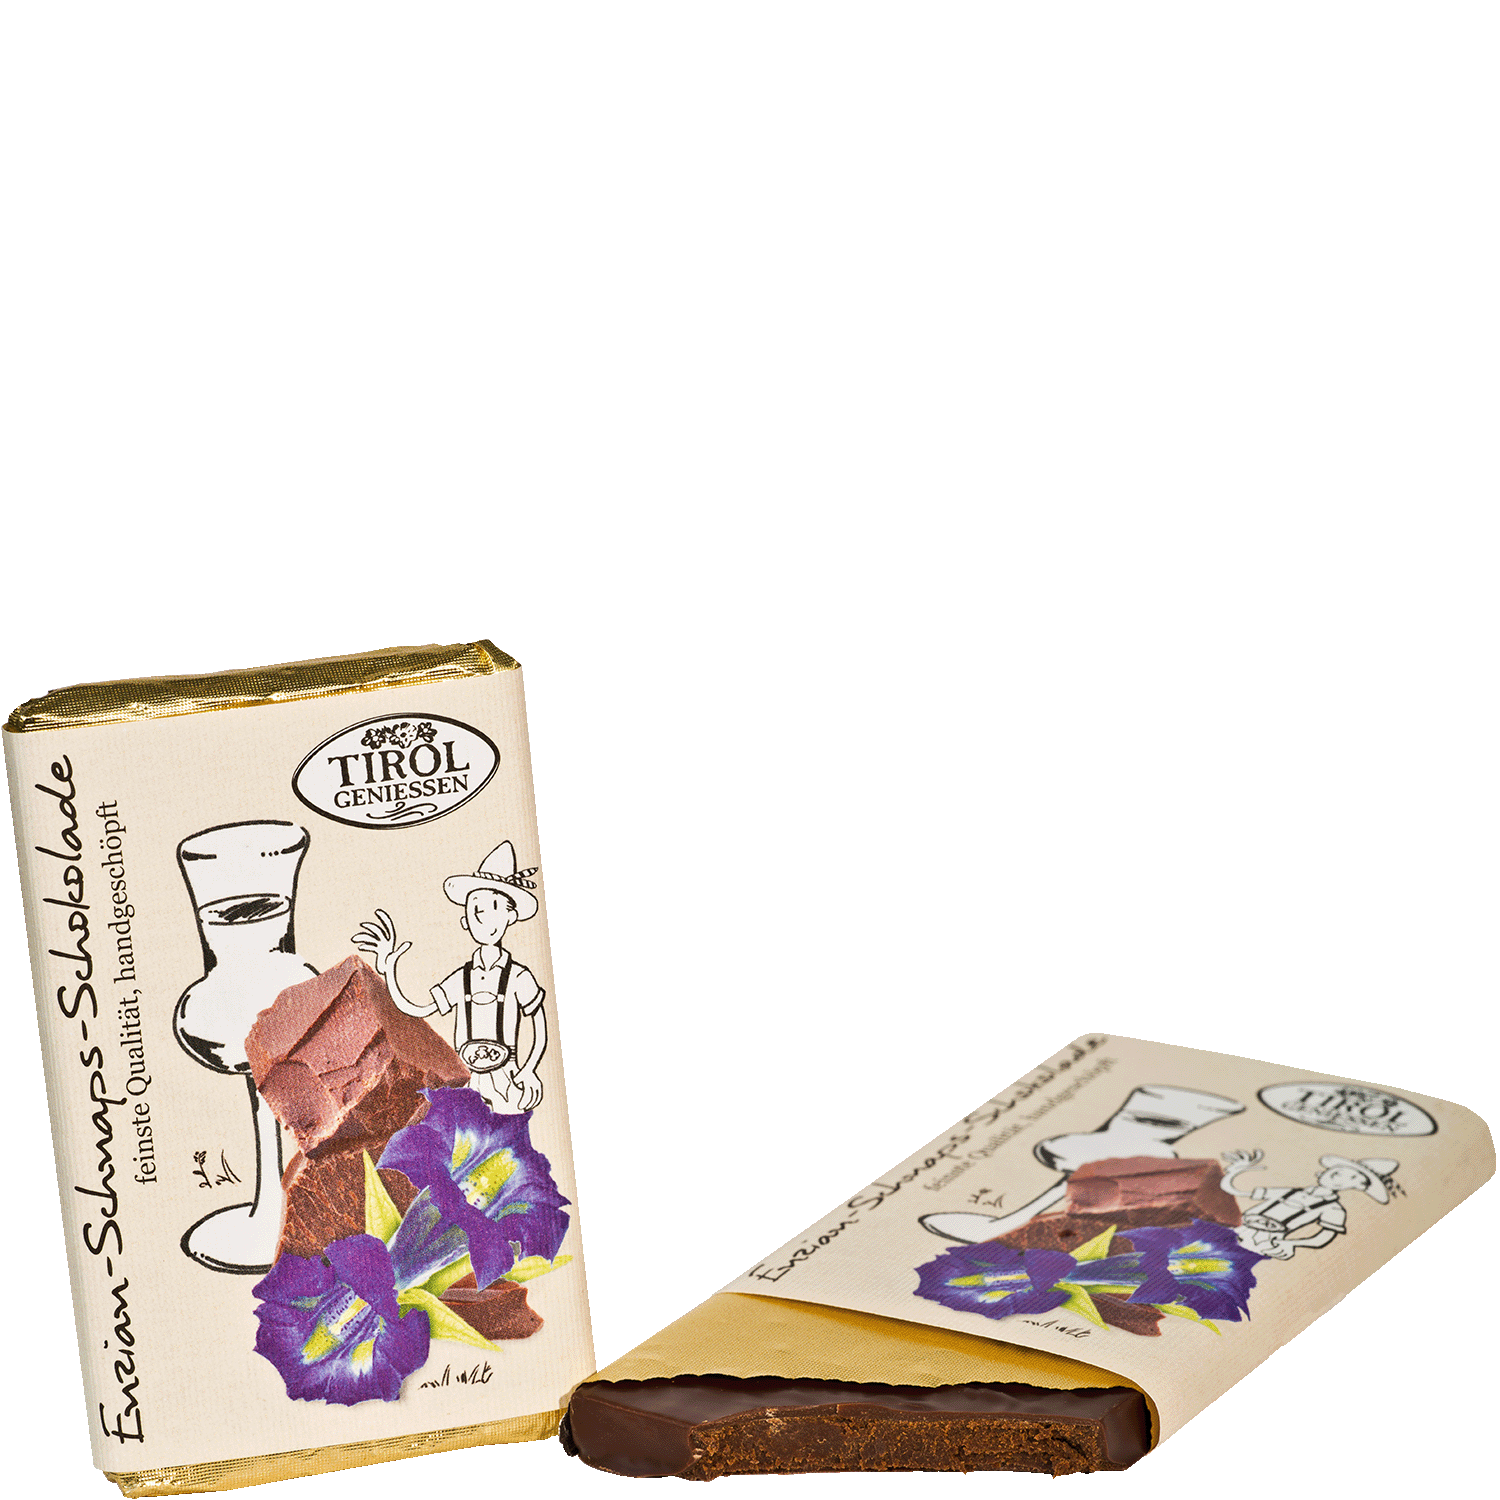 Enzian-Schnaps Schokolade aus Österreich von Tirol Geniessen